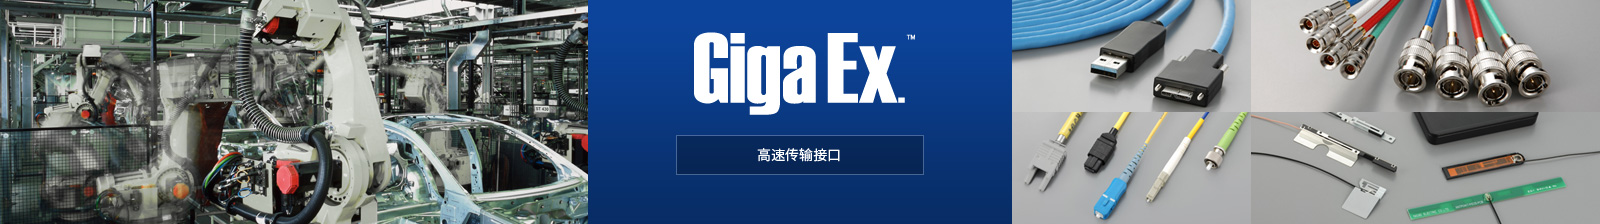 Giga Ex